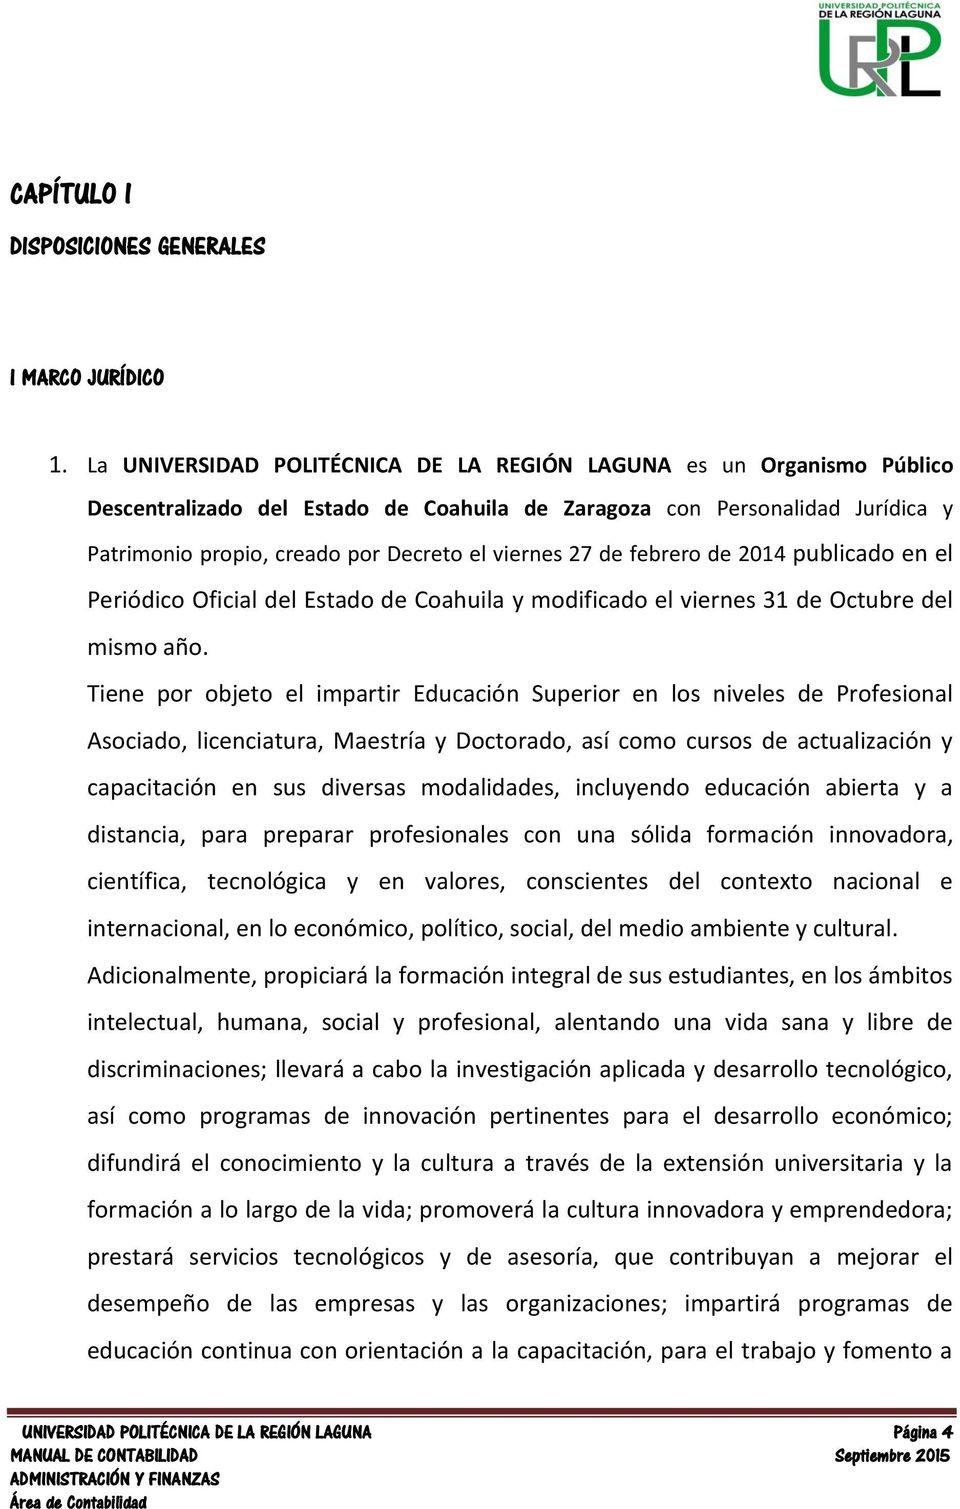 27 de febrero de 2014 publicado en el Periódico Oficial del Estado de Coahuila y modificado el viernes 31 de Octubre del mismo año.